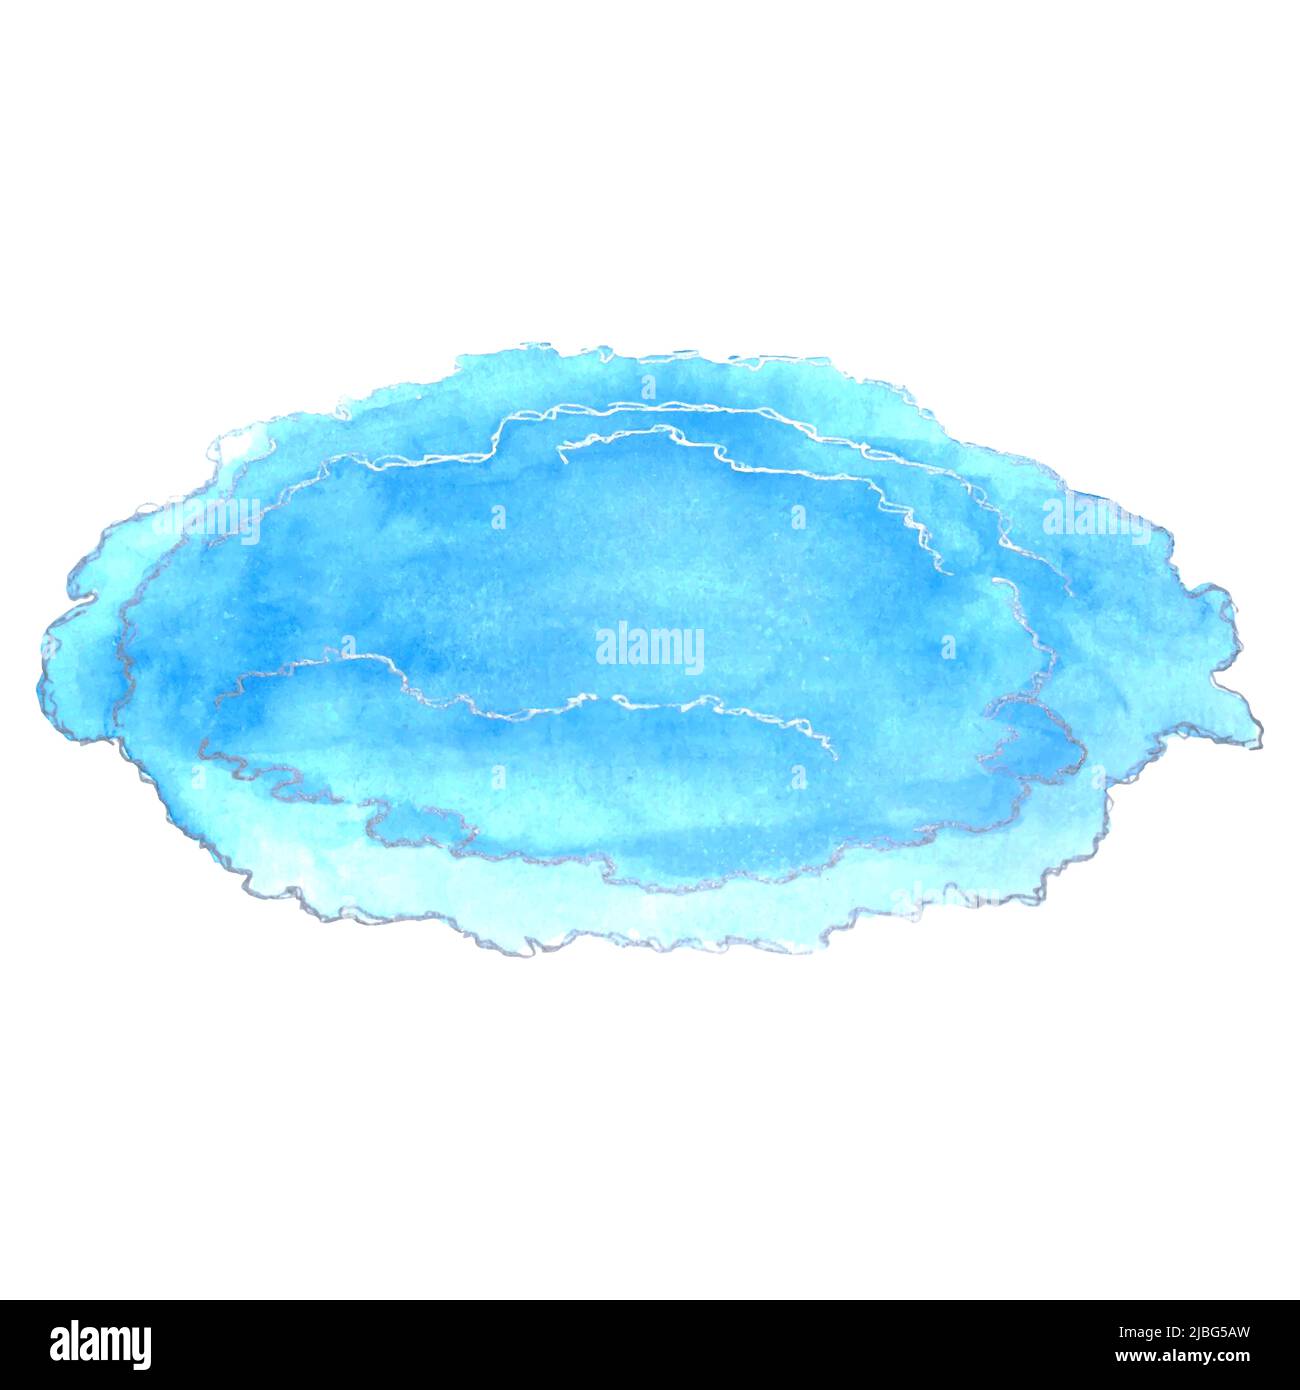 Spot astratto color acqua blu con contorno argento, isolato, su sfondo bianco. Illustrazione vettoriale Illustrazione Vettoriale